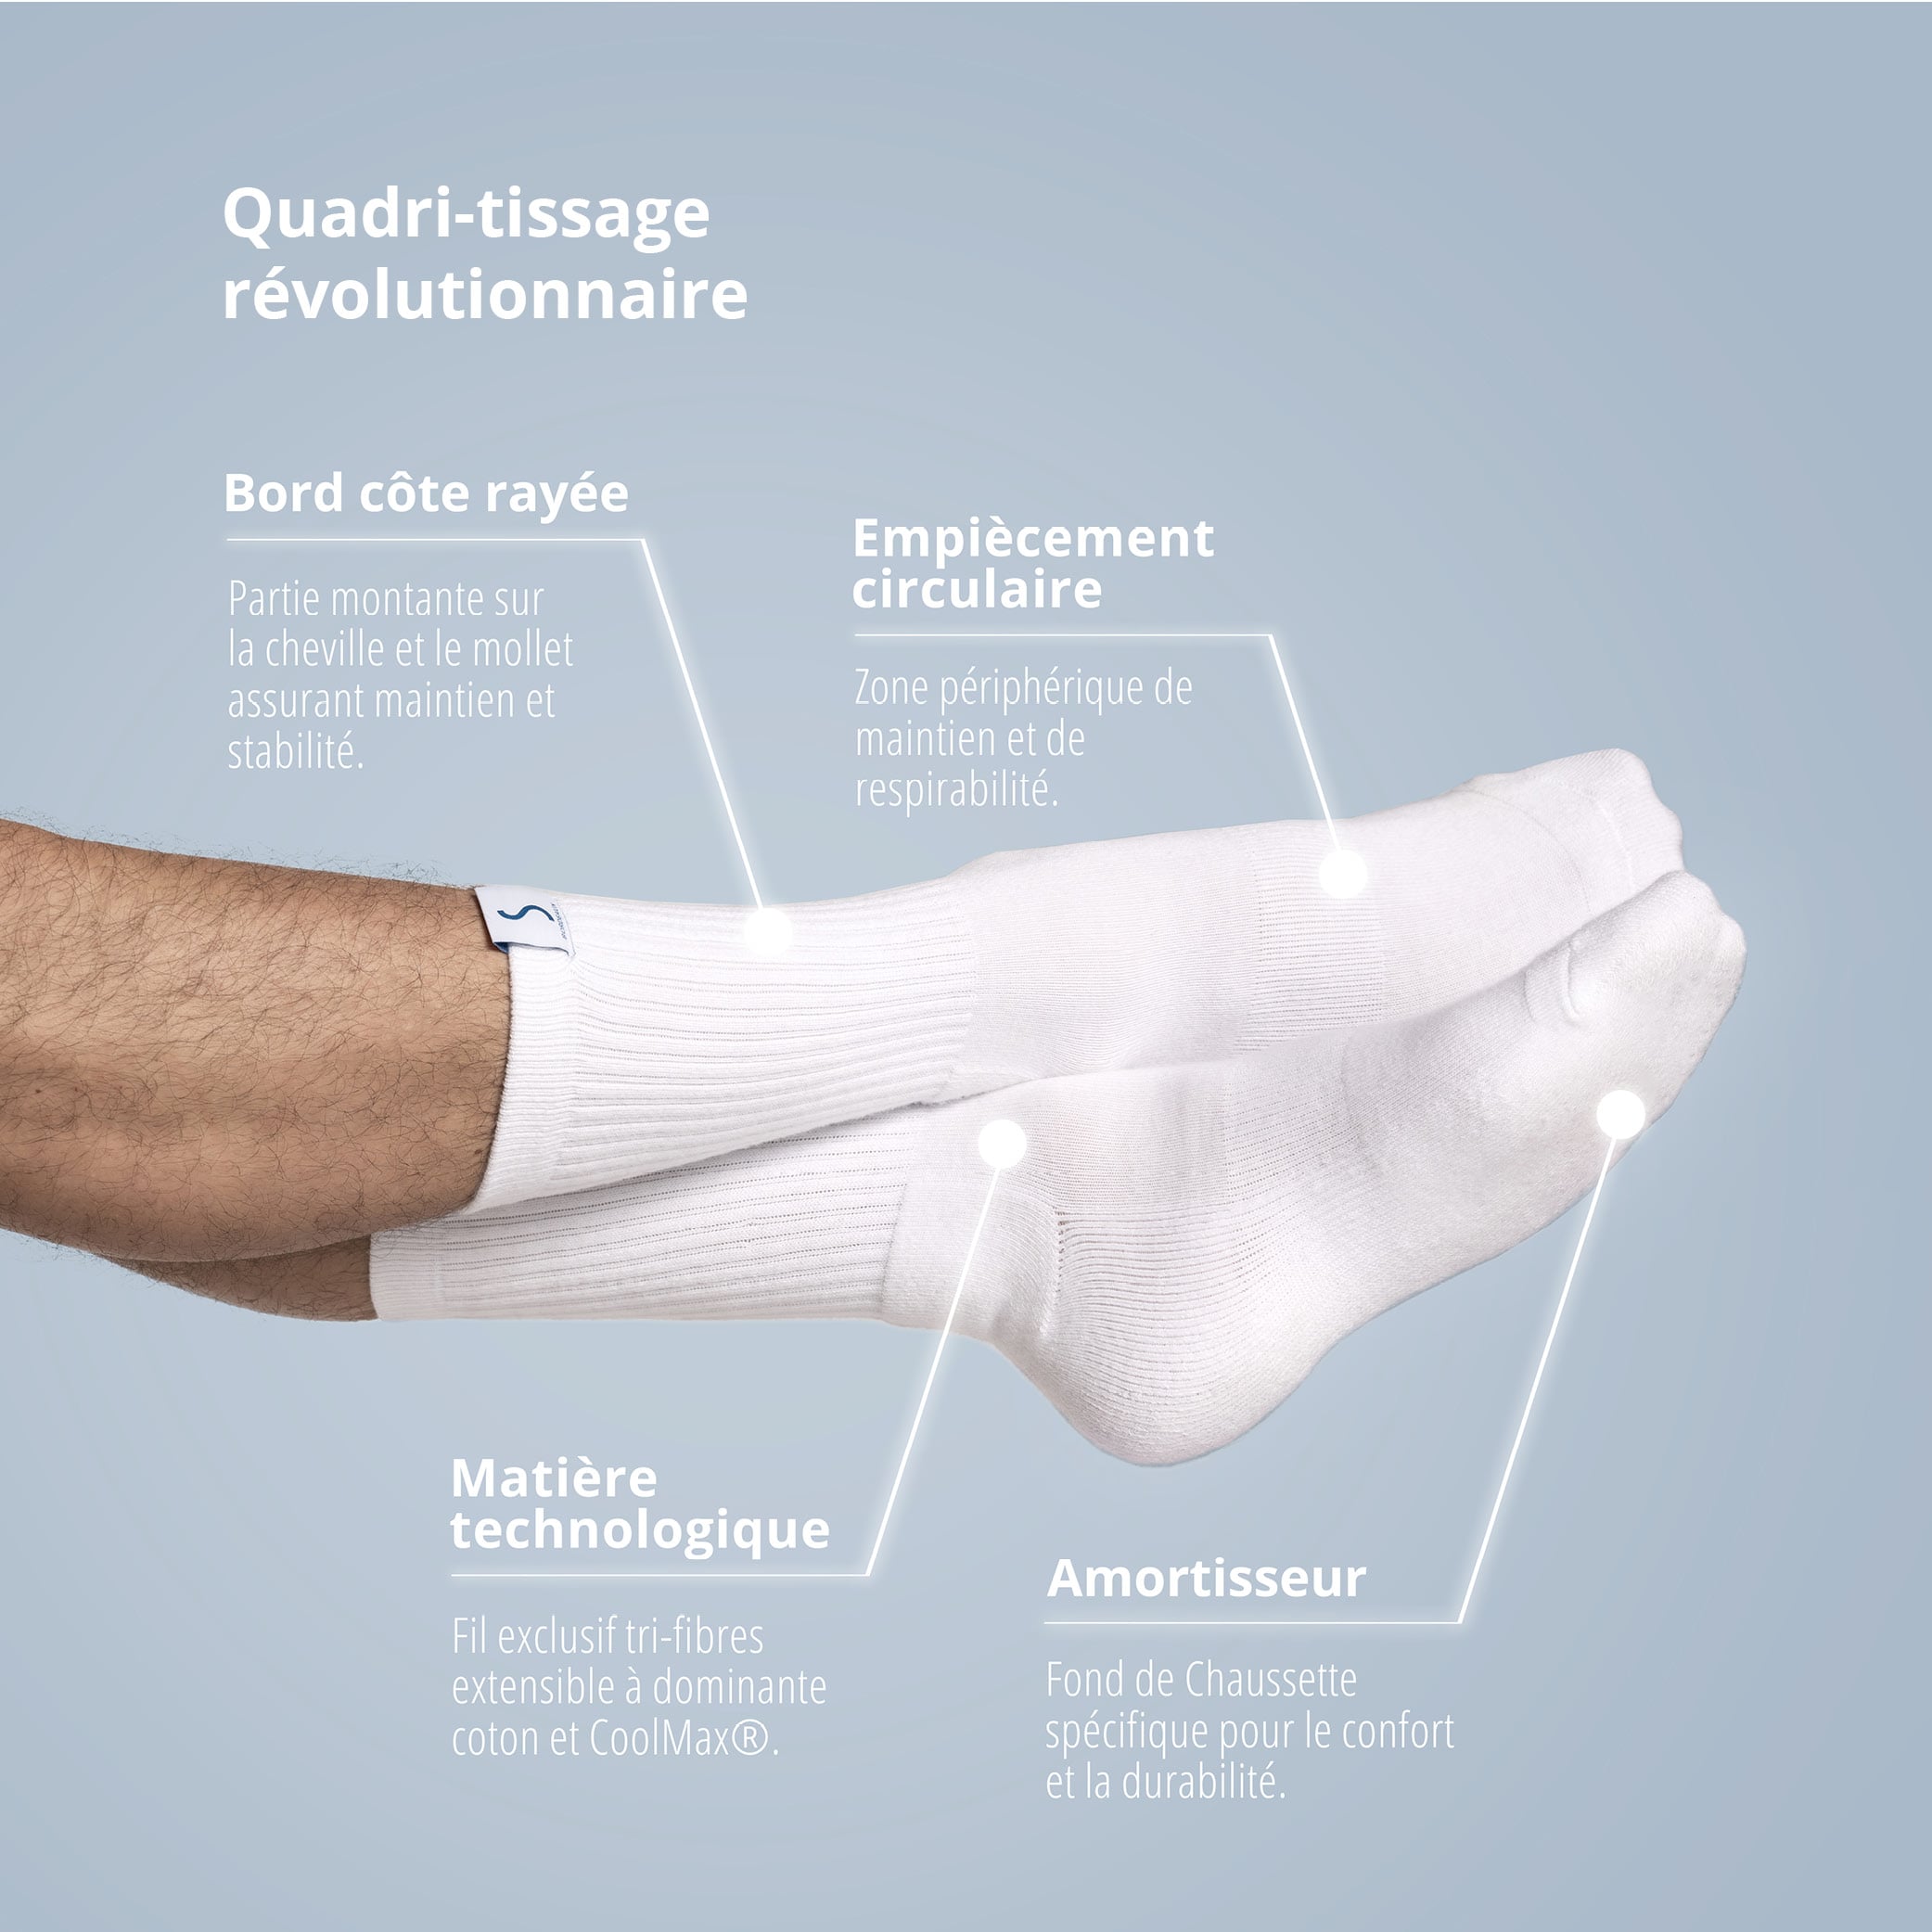 Paire de chaussettes socquettes blanches pour le sport pour homme de la marque S BORDEAUX